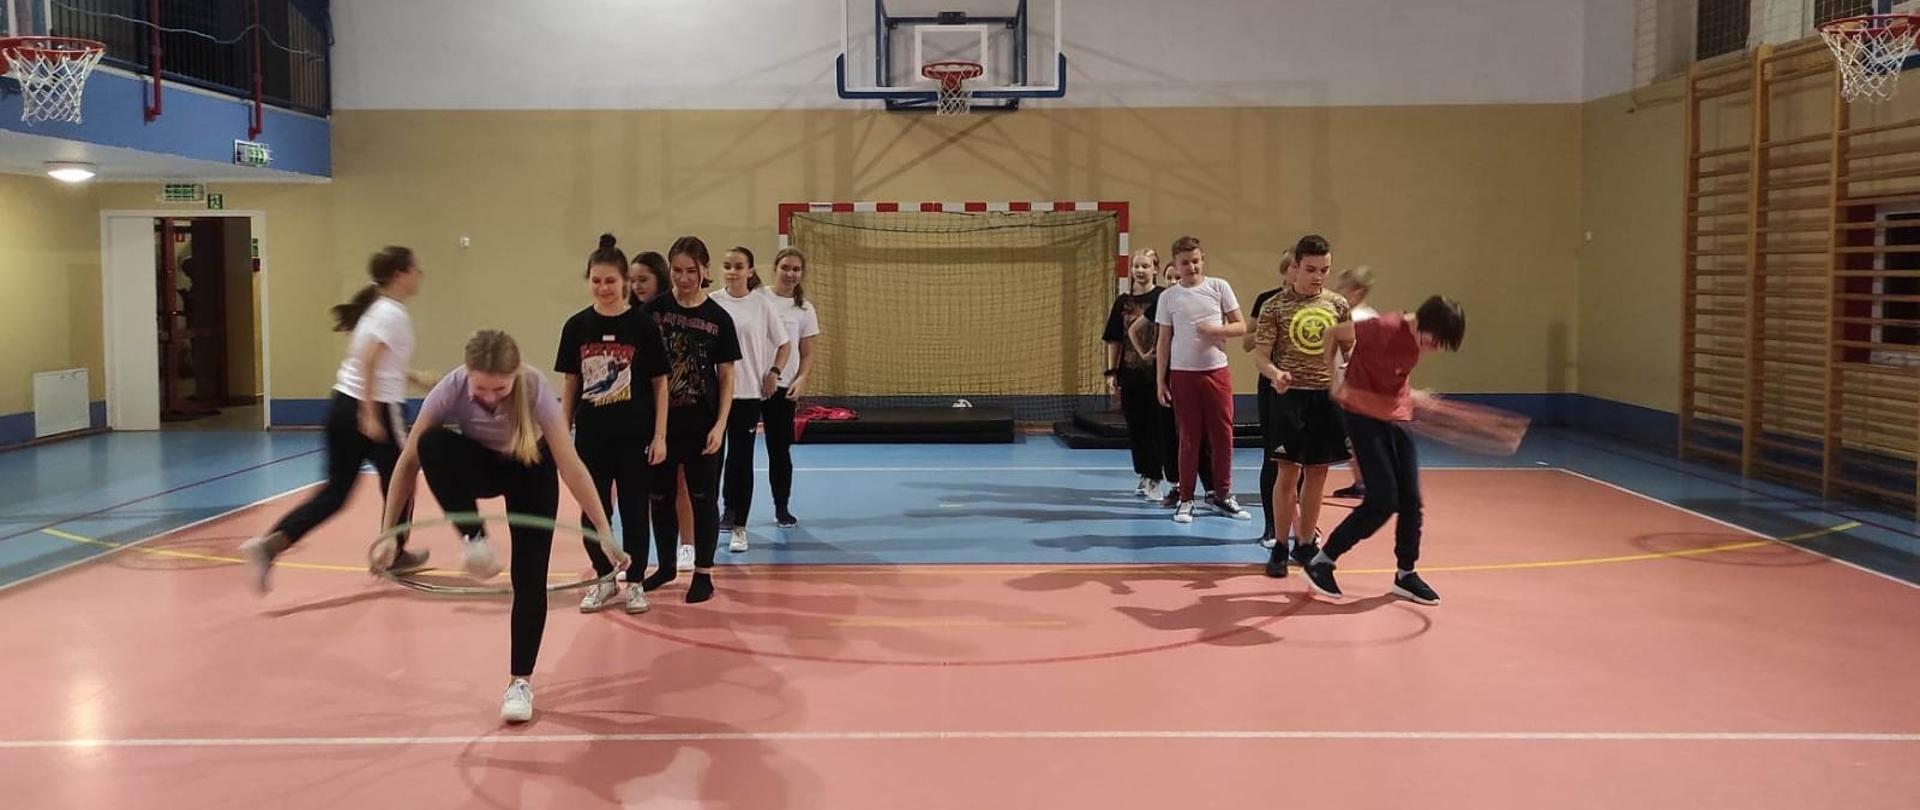 Na sali gimnastycznej stoją nastolatkowie w dwóch rzędach. Pierwsze osoby w rzędzie skaczą przez koło hula-hop.